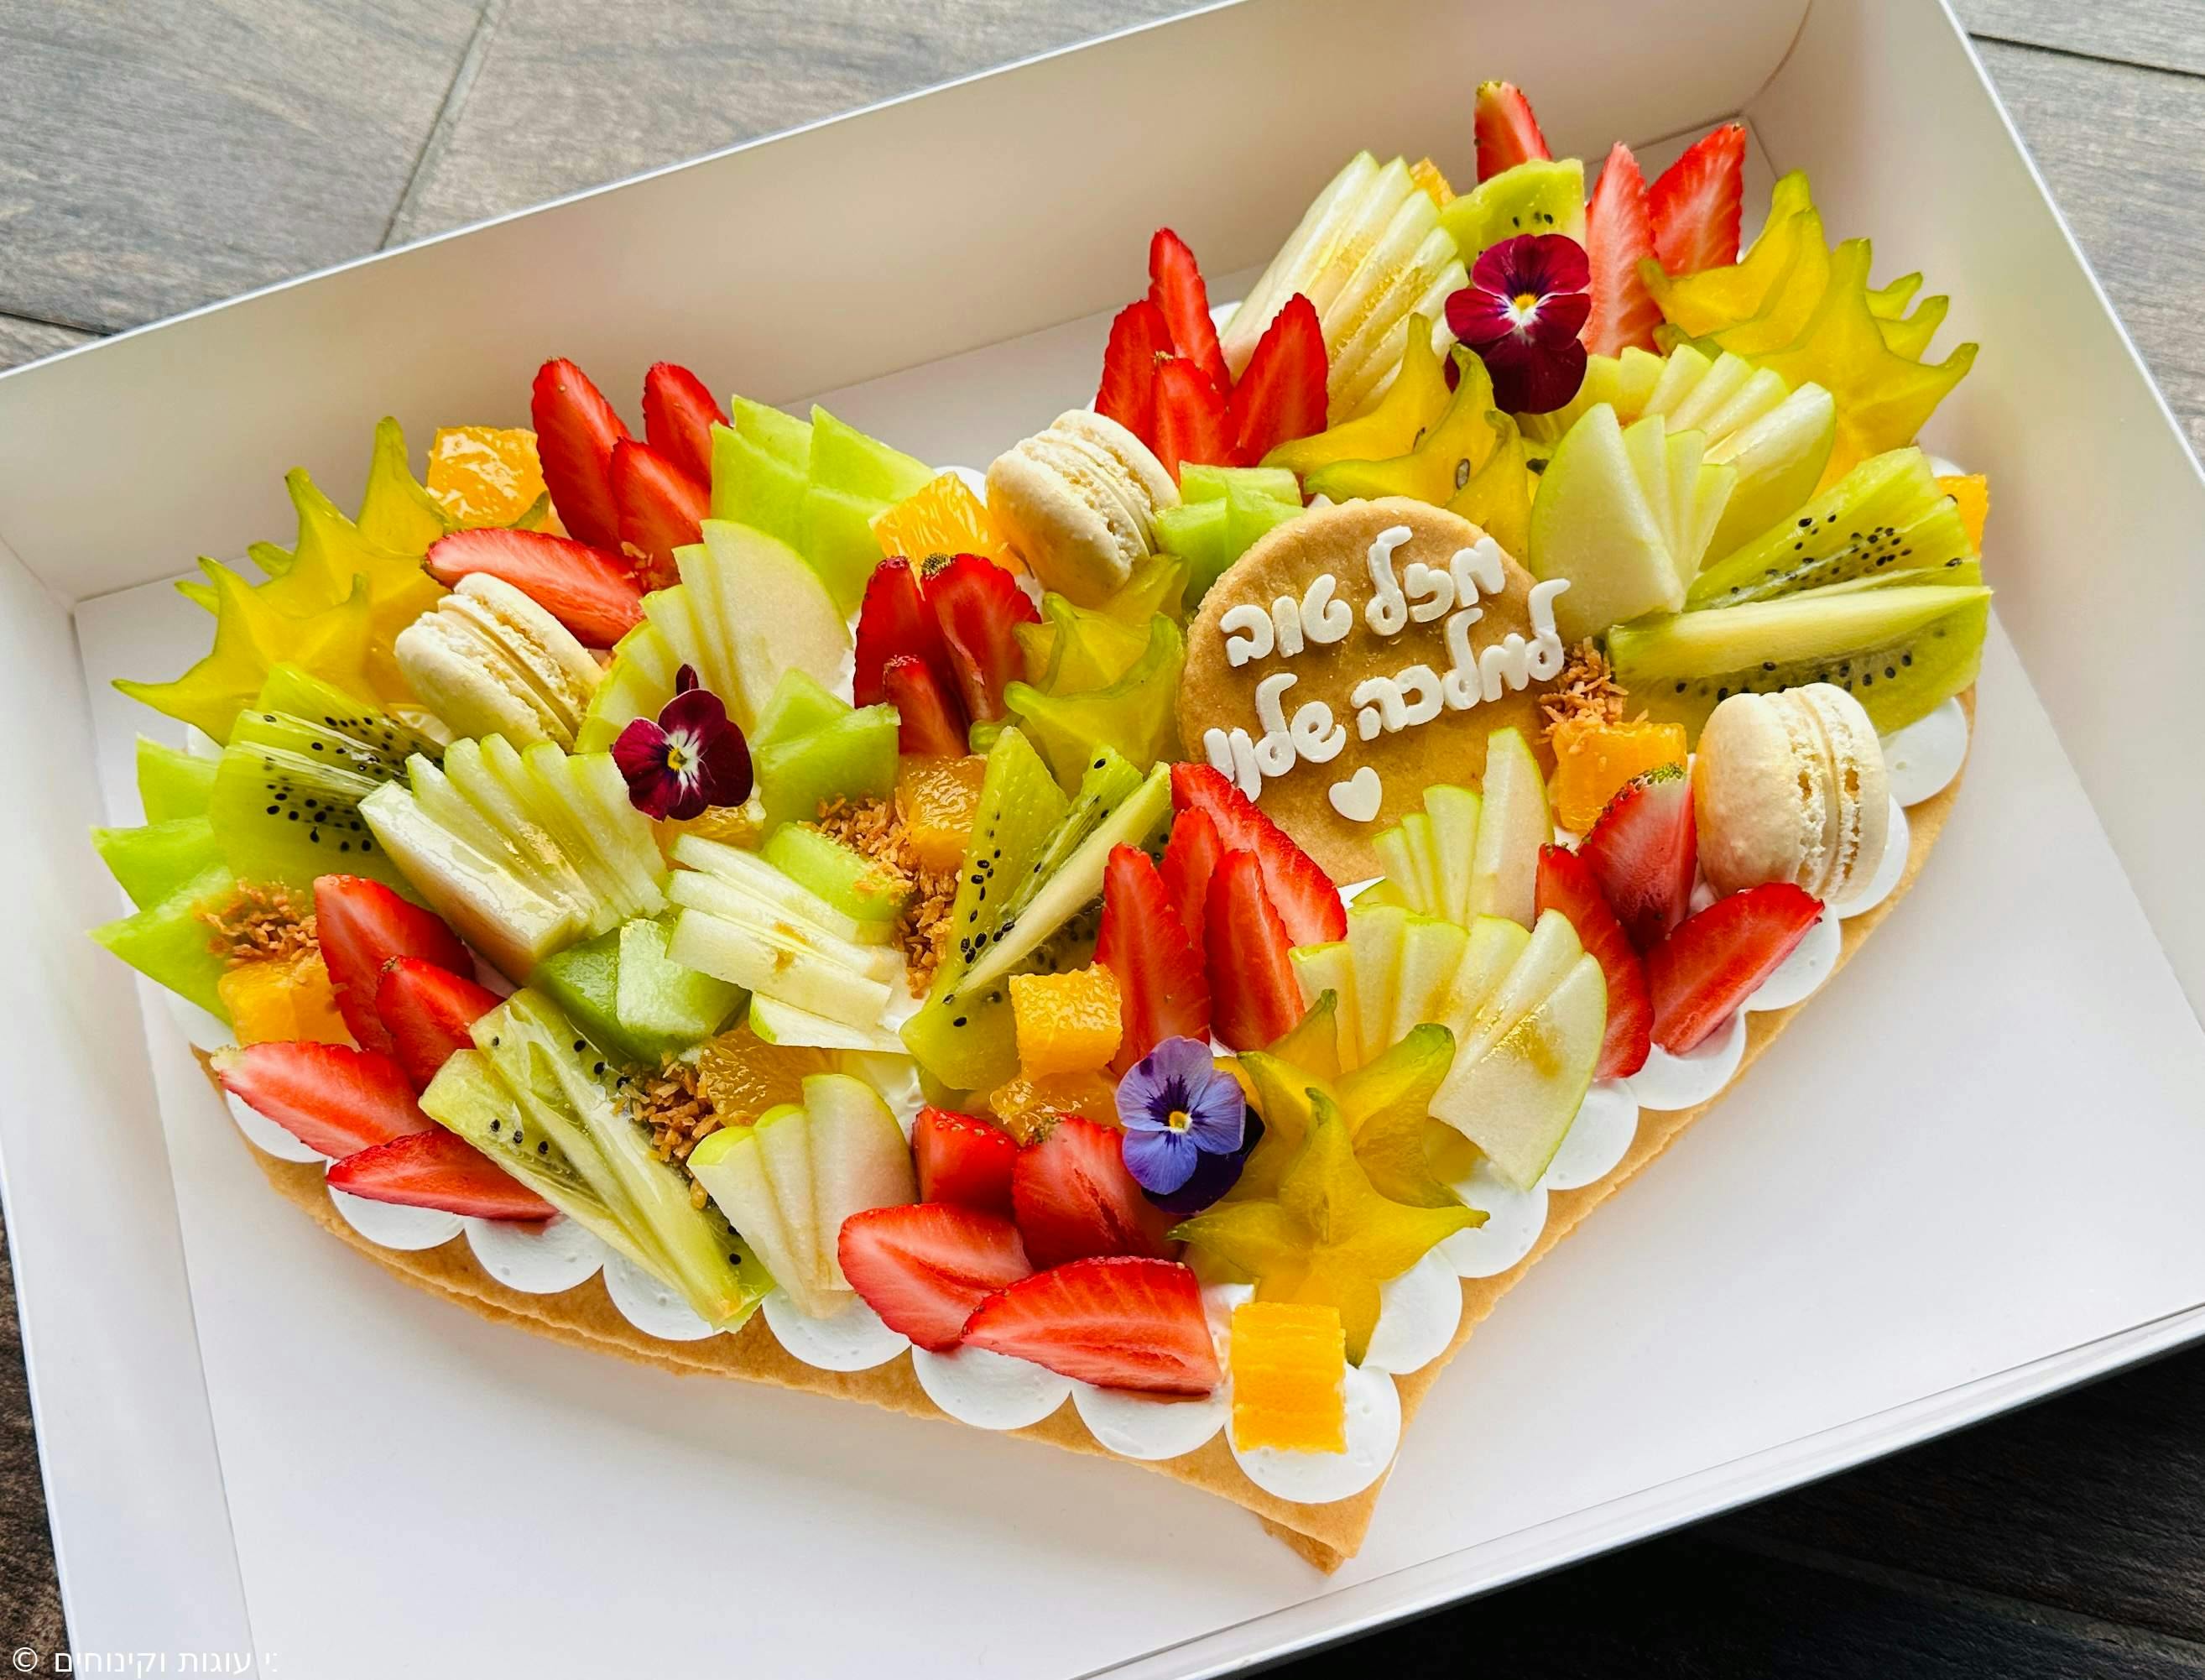 עוגת מספרים לב - בצק פריך שקדים, קרם וניל עדין
ומגוון פירות העונה עם פרחים אכילים